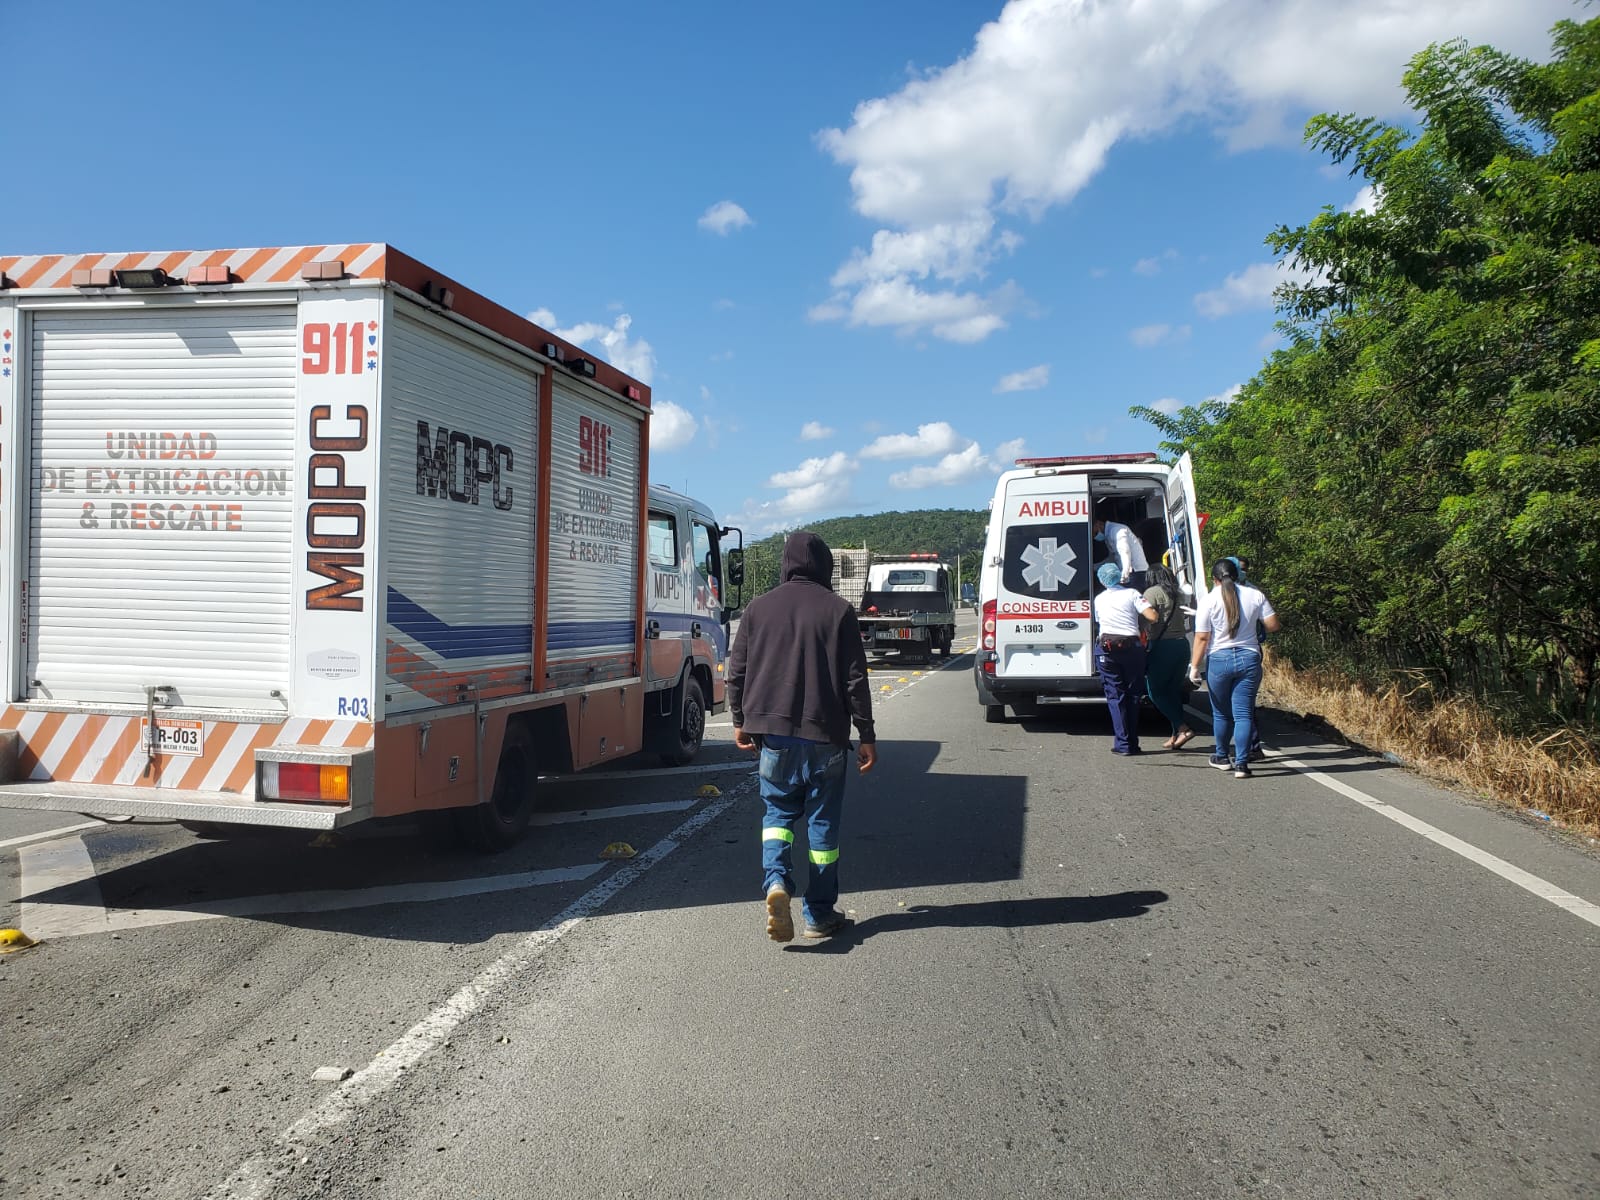 9-1-1 coordina asistencia en accidente de tránsito múltiple ocurrido en Autopista Duarte